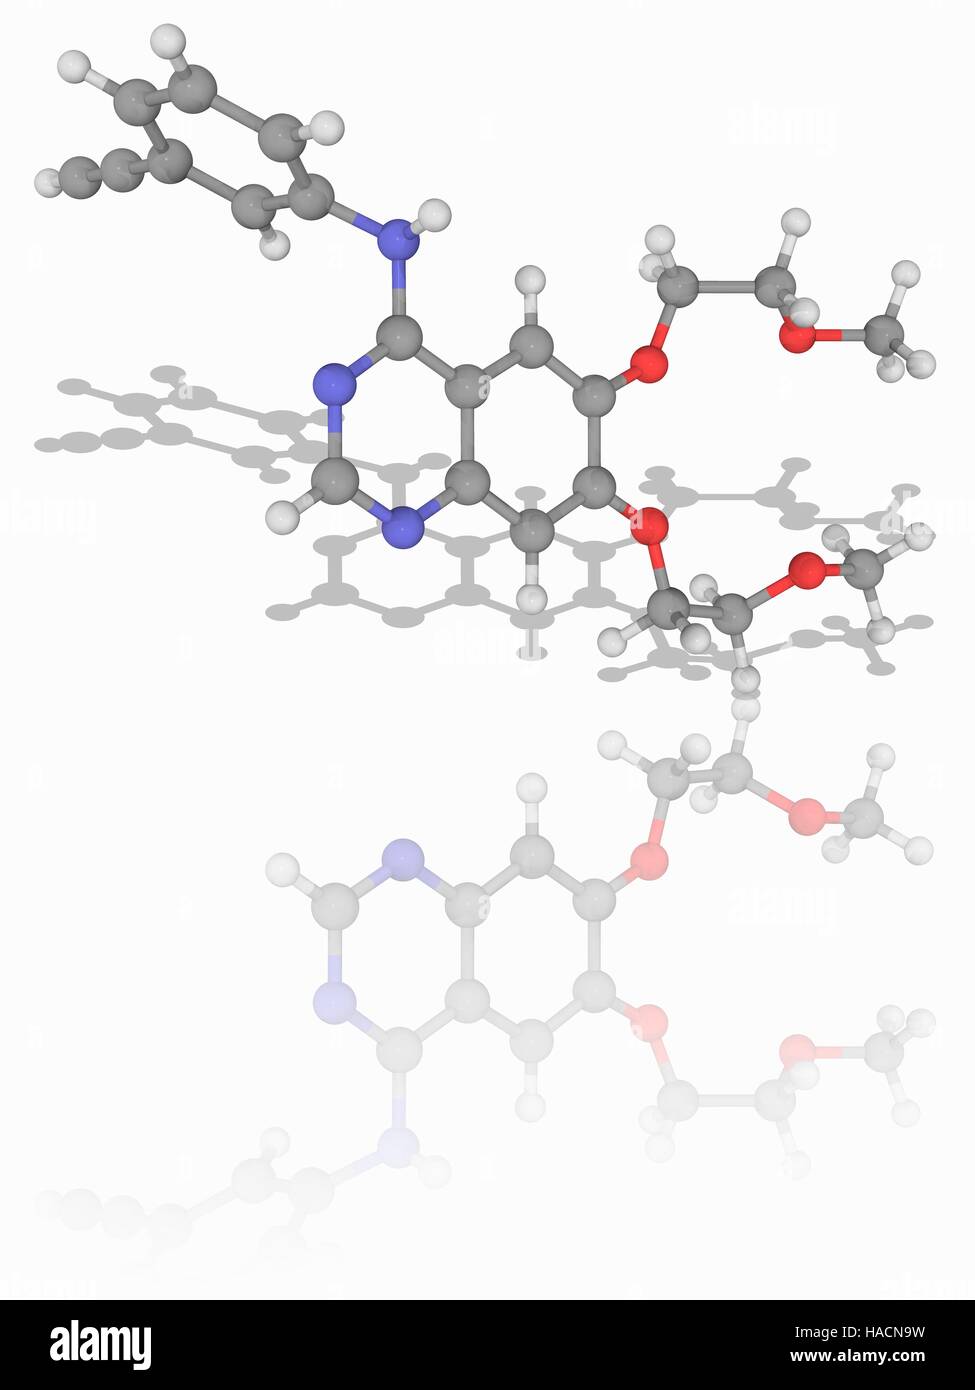 Erlotinib. Molekülmodell für die Chemotherapie Medikament Erlotinib (C22. H23. N3. O4). Dieses Medikament wird zur Behandlung von nicht-kleinzelligem Lungenkrebs, Bauchspeicheldrüsenkrebs und andere Arten von Krebs. Atome als Kugeln dargestellt werden und sind farblich gekennzeichnet: Kohlenstoff (grau), Wasserstoff (weiß), Stickstoff (blau) und Sauerstoff (rot). Abbildung. Stockfoto